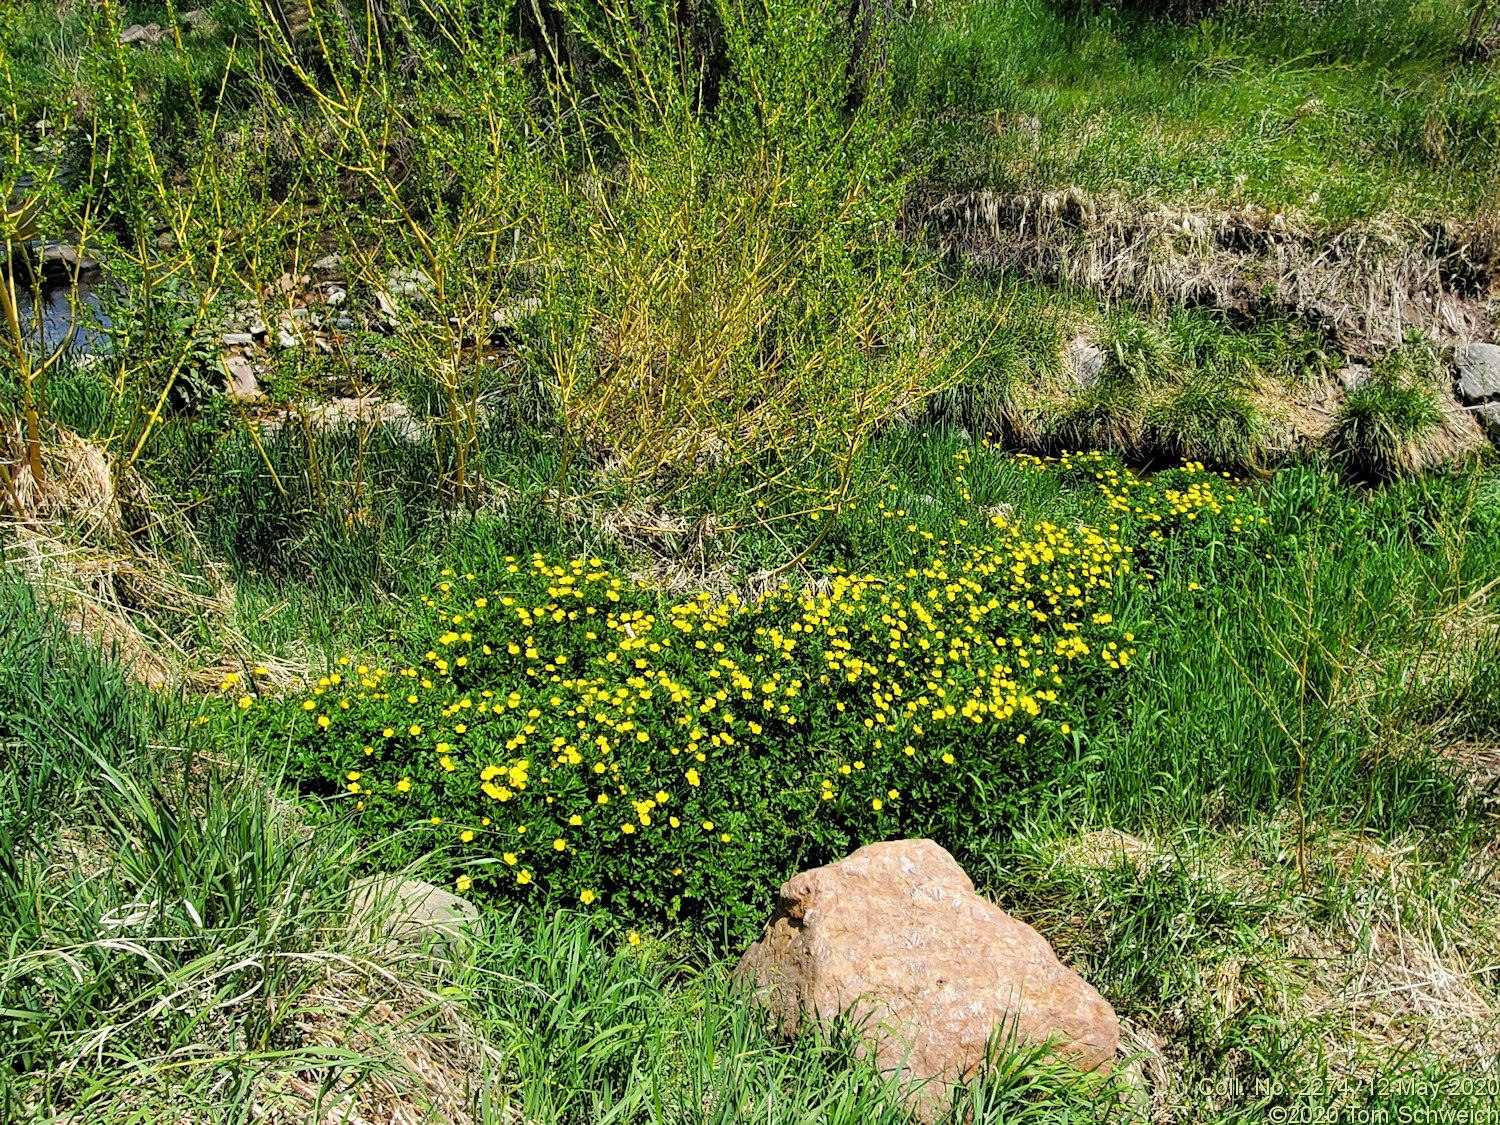 Ranunculaceae Ranunculus acris